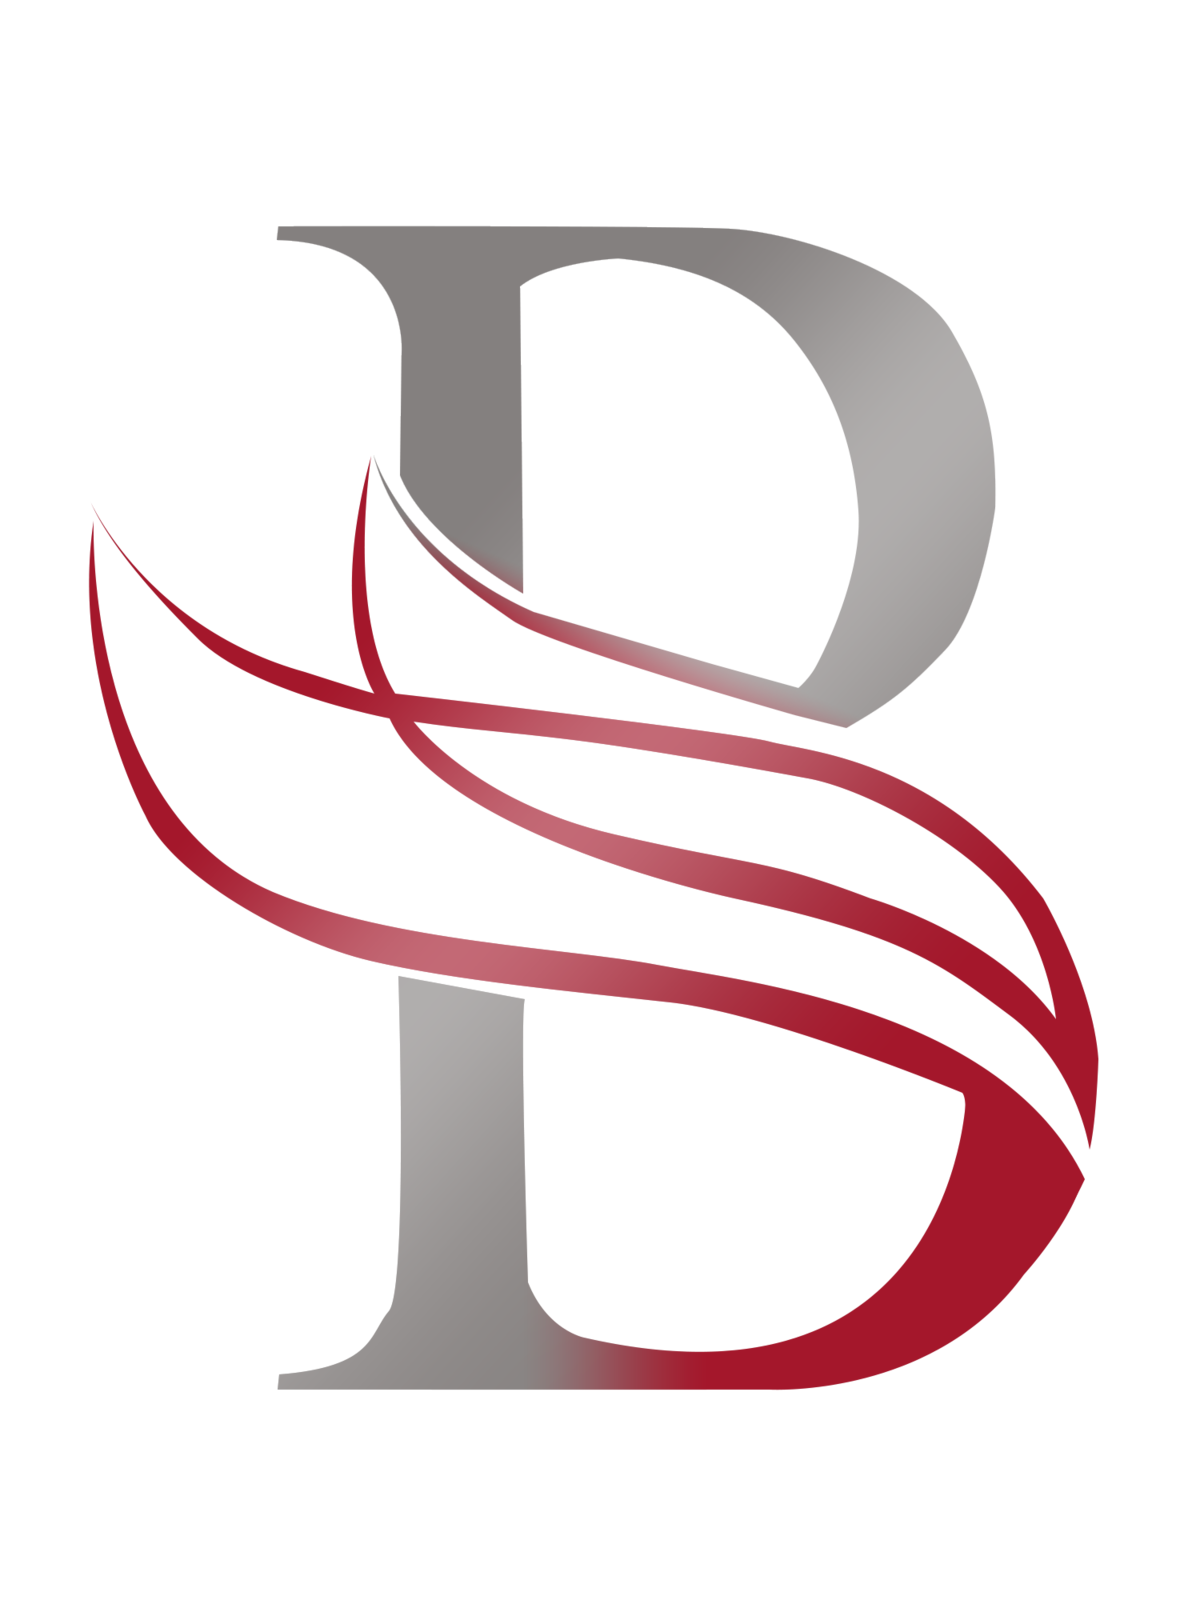 B logo.png